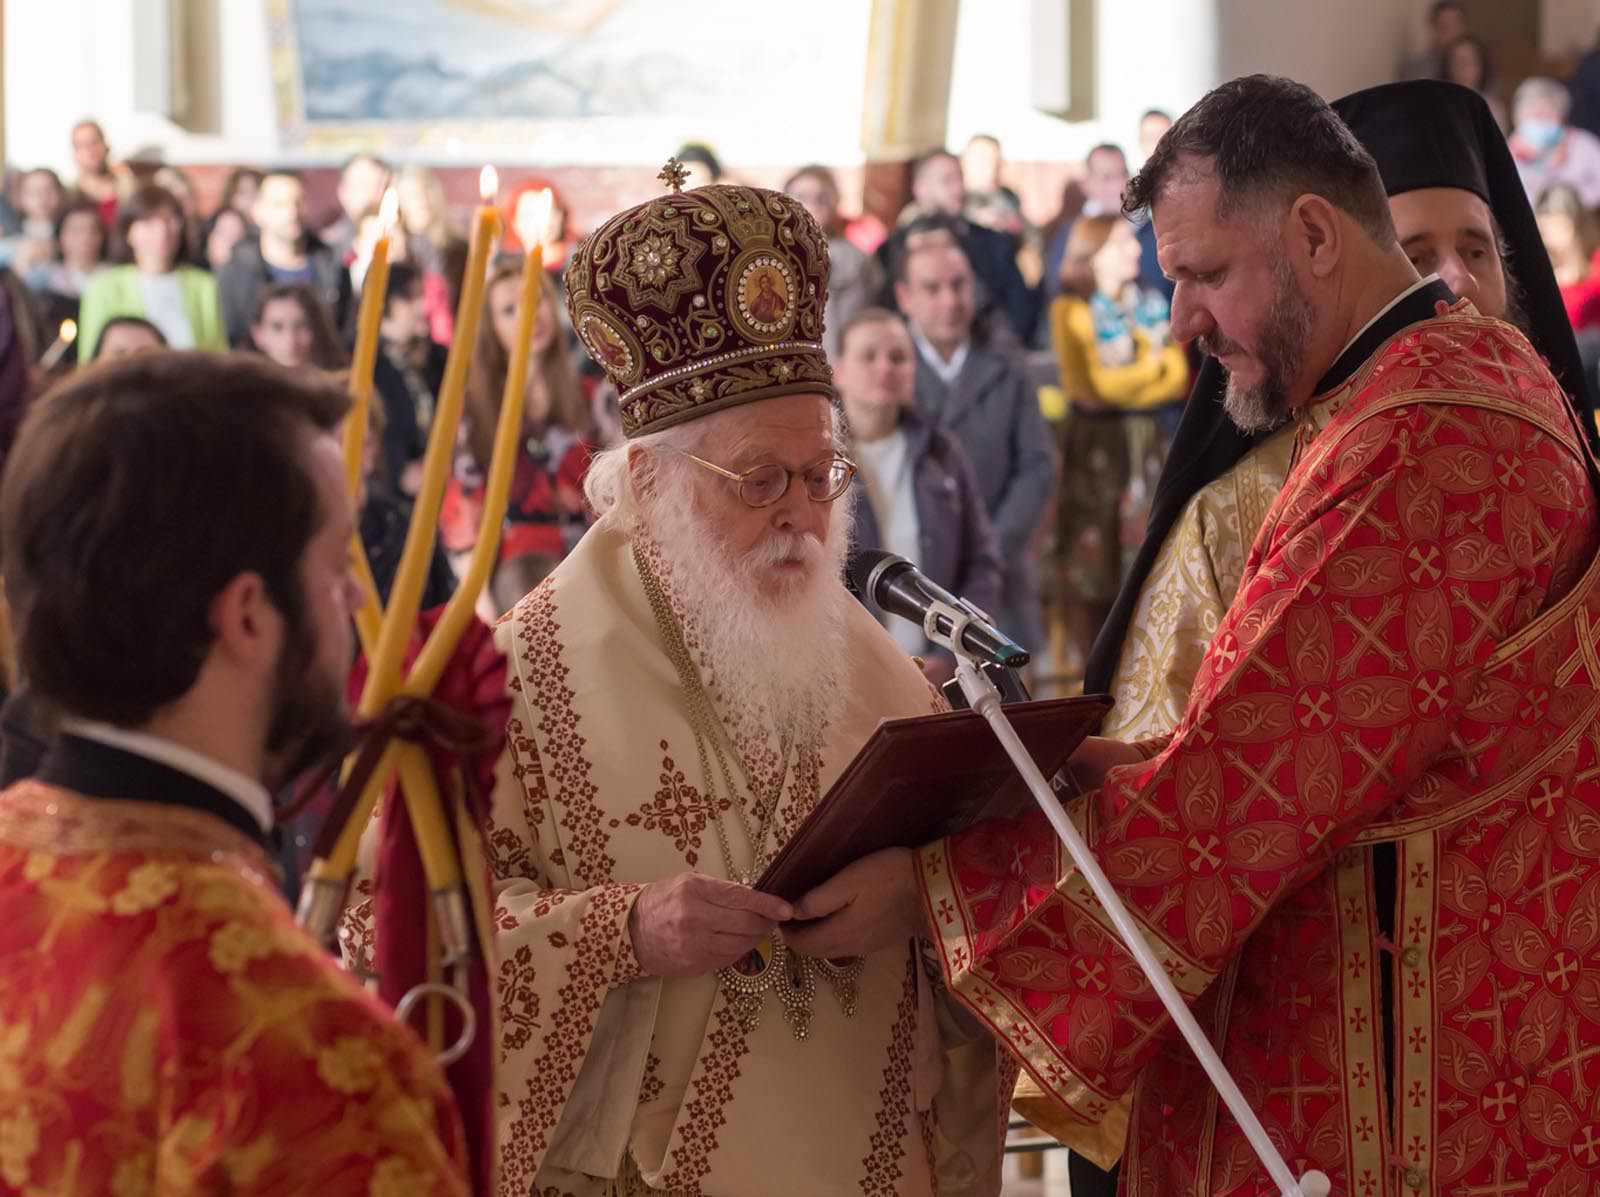 Αρχιεπίσκοπος Αλβανίας